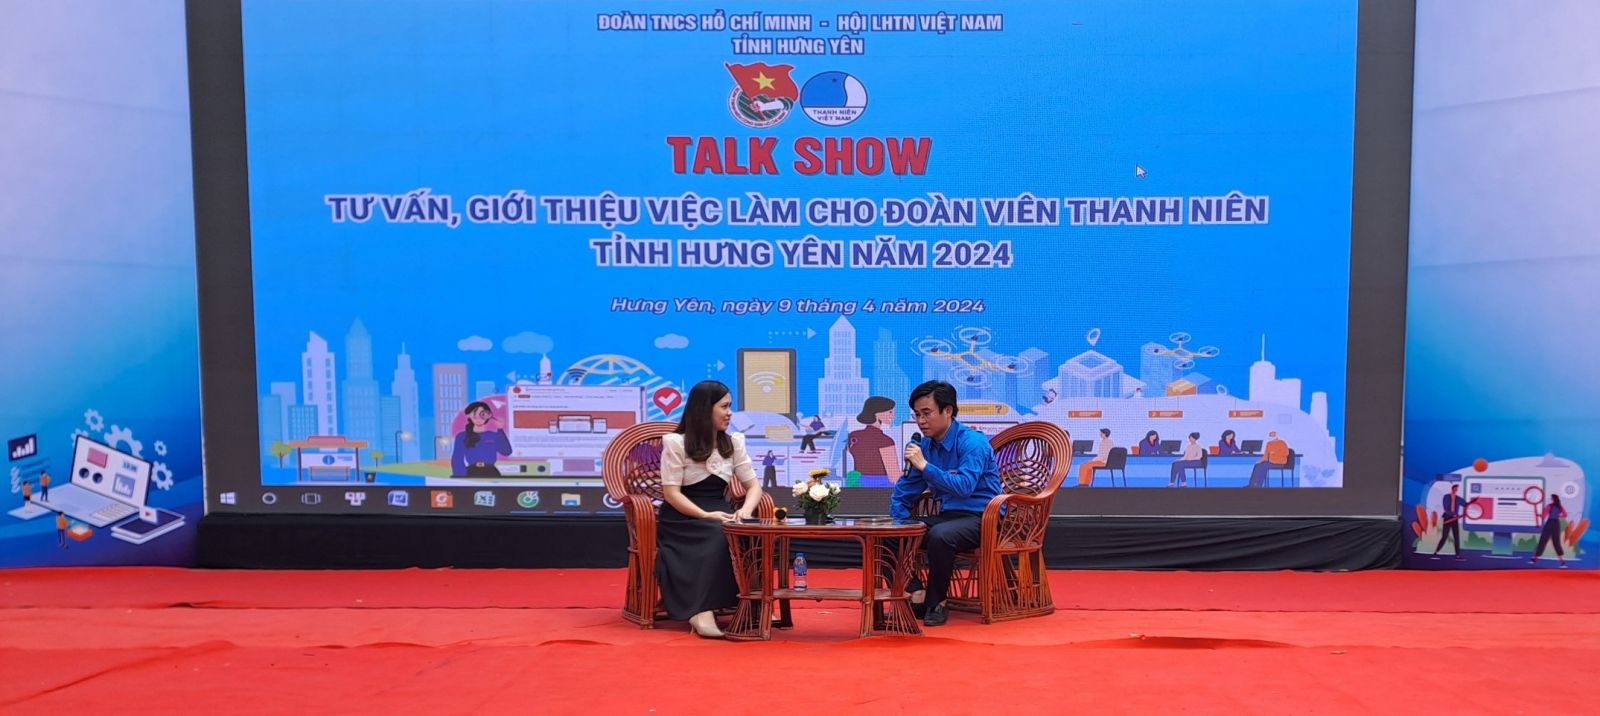 Tỉnh đoàn tổ chức chương trình Talkshow về tư vấn việc làm cho ĐVTN tỉnh Hưng Yên năm 2024